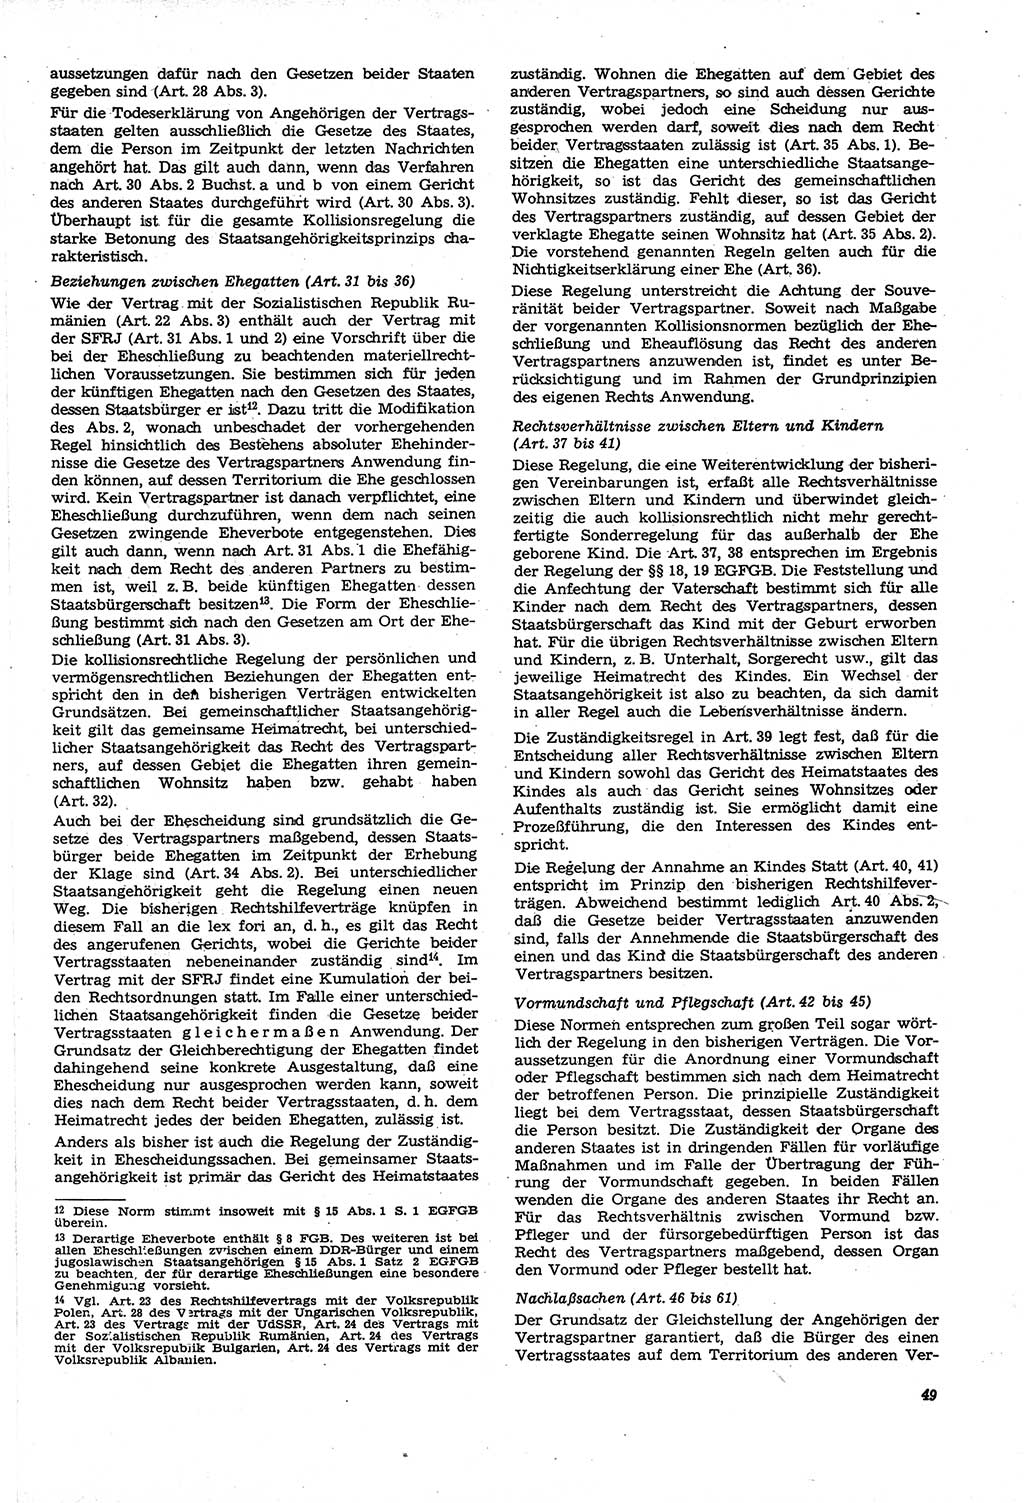 Neue Justiz (NJ), Zeitschrift für Recht und Rechtswissenschaft [Deutsche Demokratische Republik (DDR)], 21. Jahrgang 1967, Seite 49 (NJ DDR 1967, S. 49)